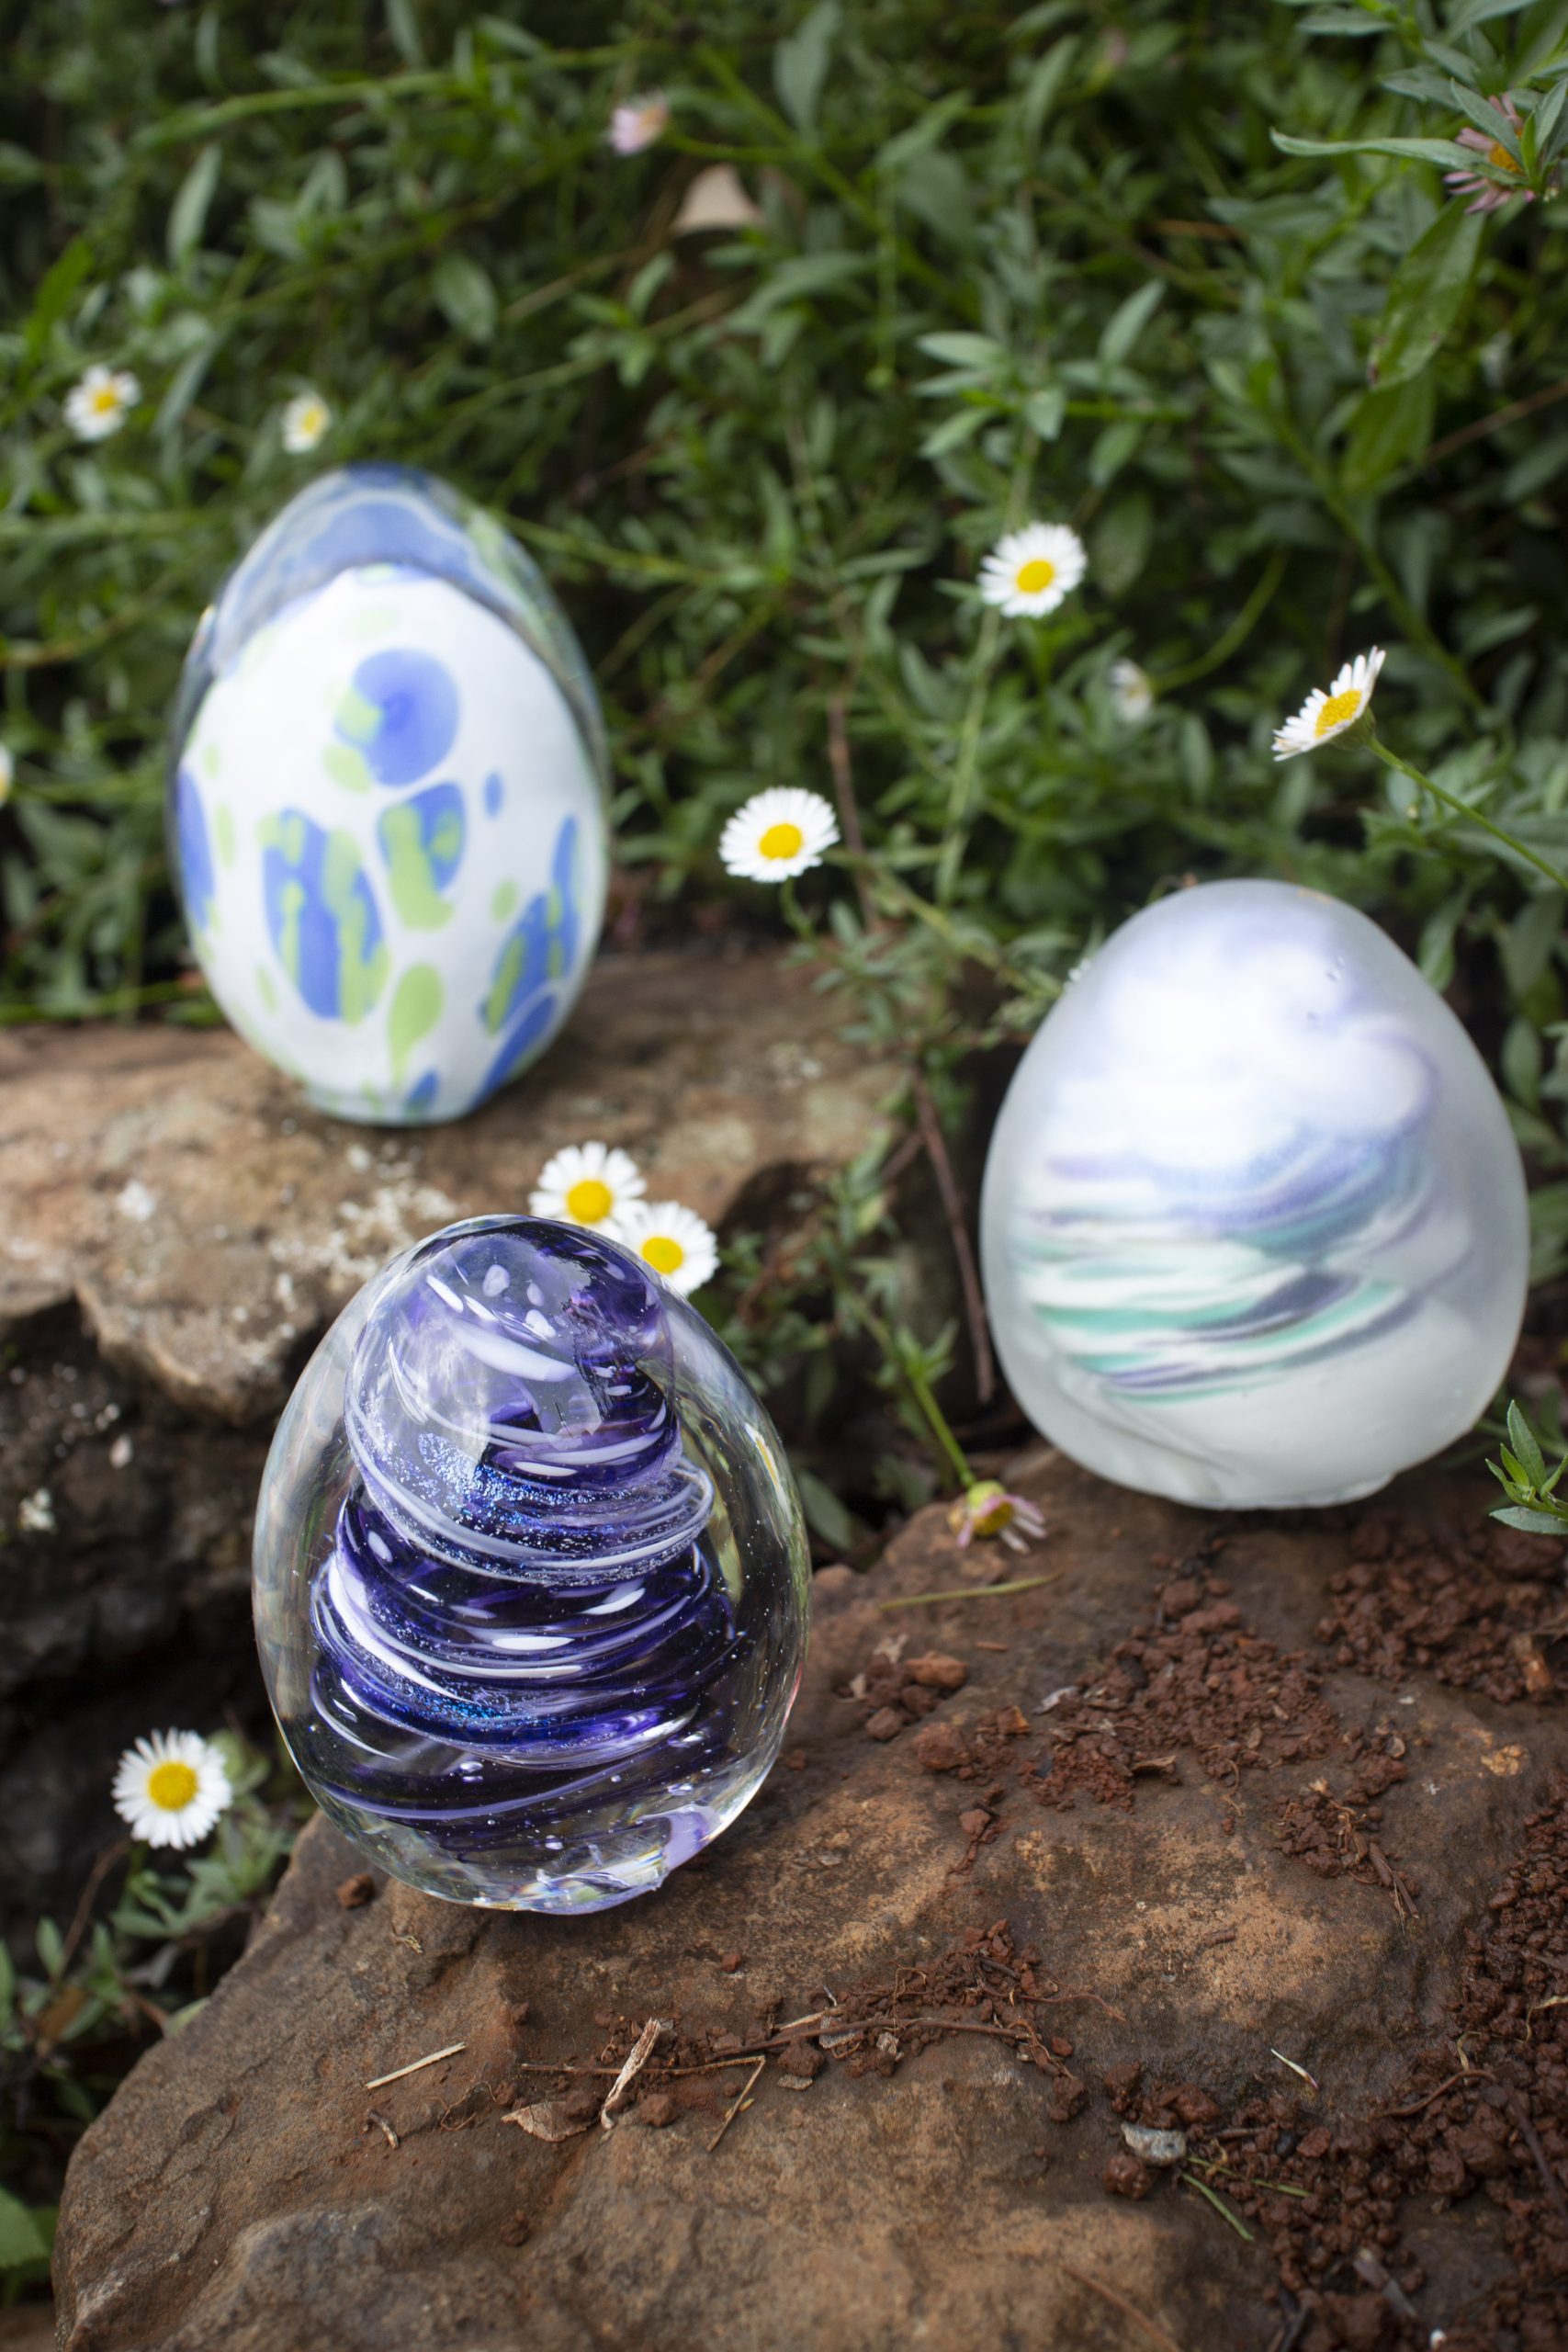 Glass Easter Eggs